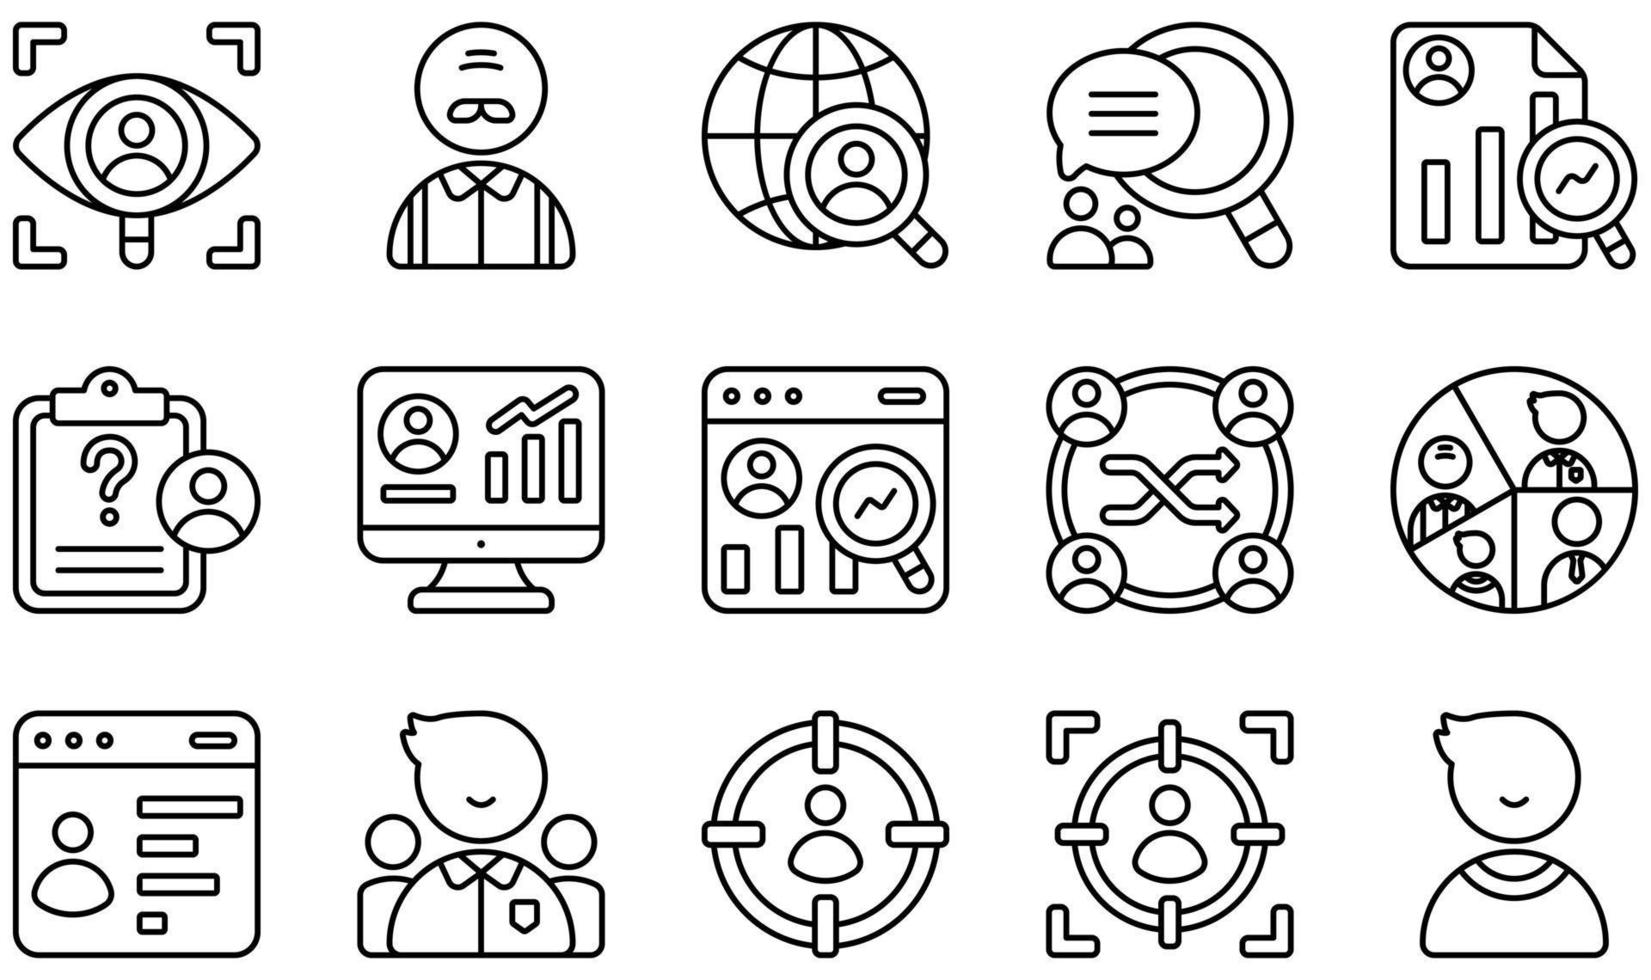 Reihe von Vektorsymbolen im Zusammenhang mit der Marktforschung. enthält Symbole wie Beobachtung, Online-Umfrage, qualitative, quantitative, Forschung, Segmentierung und mehr. vektor